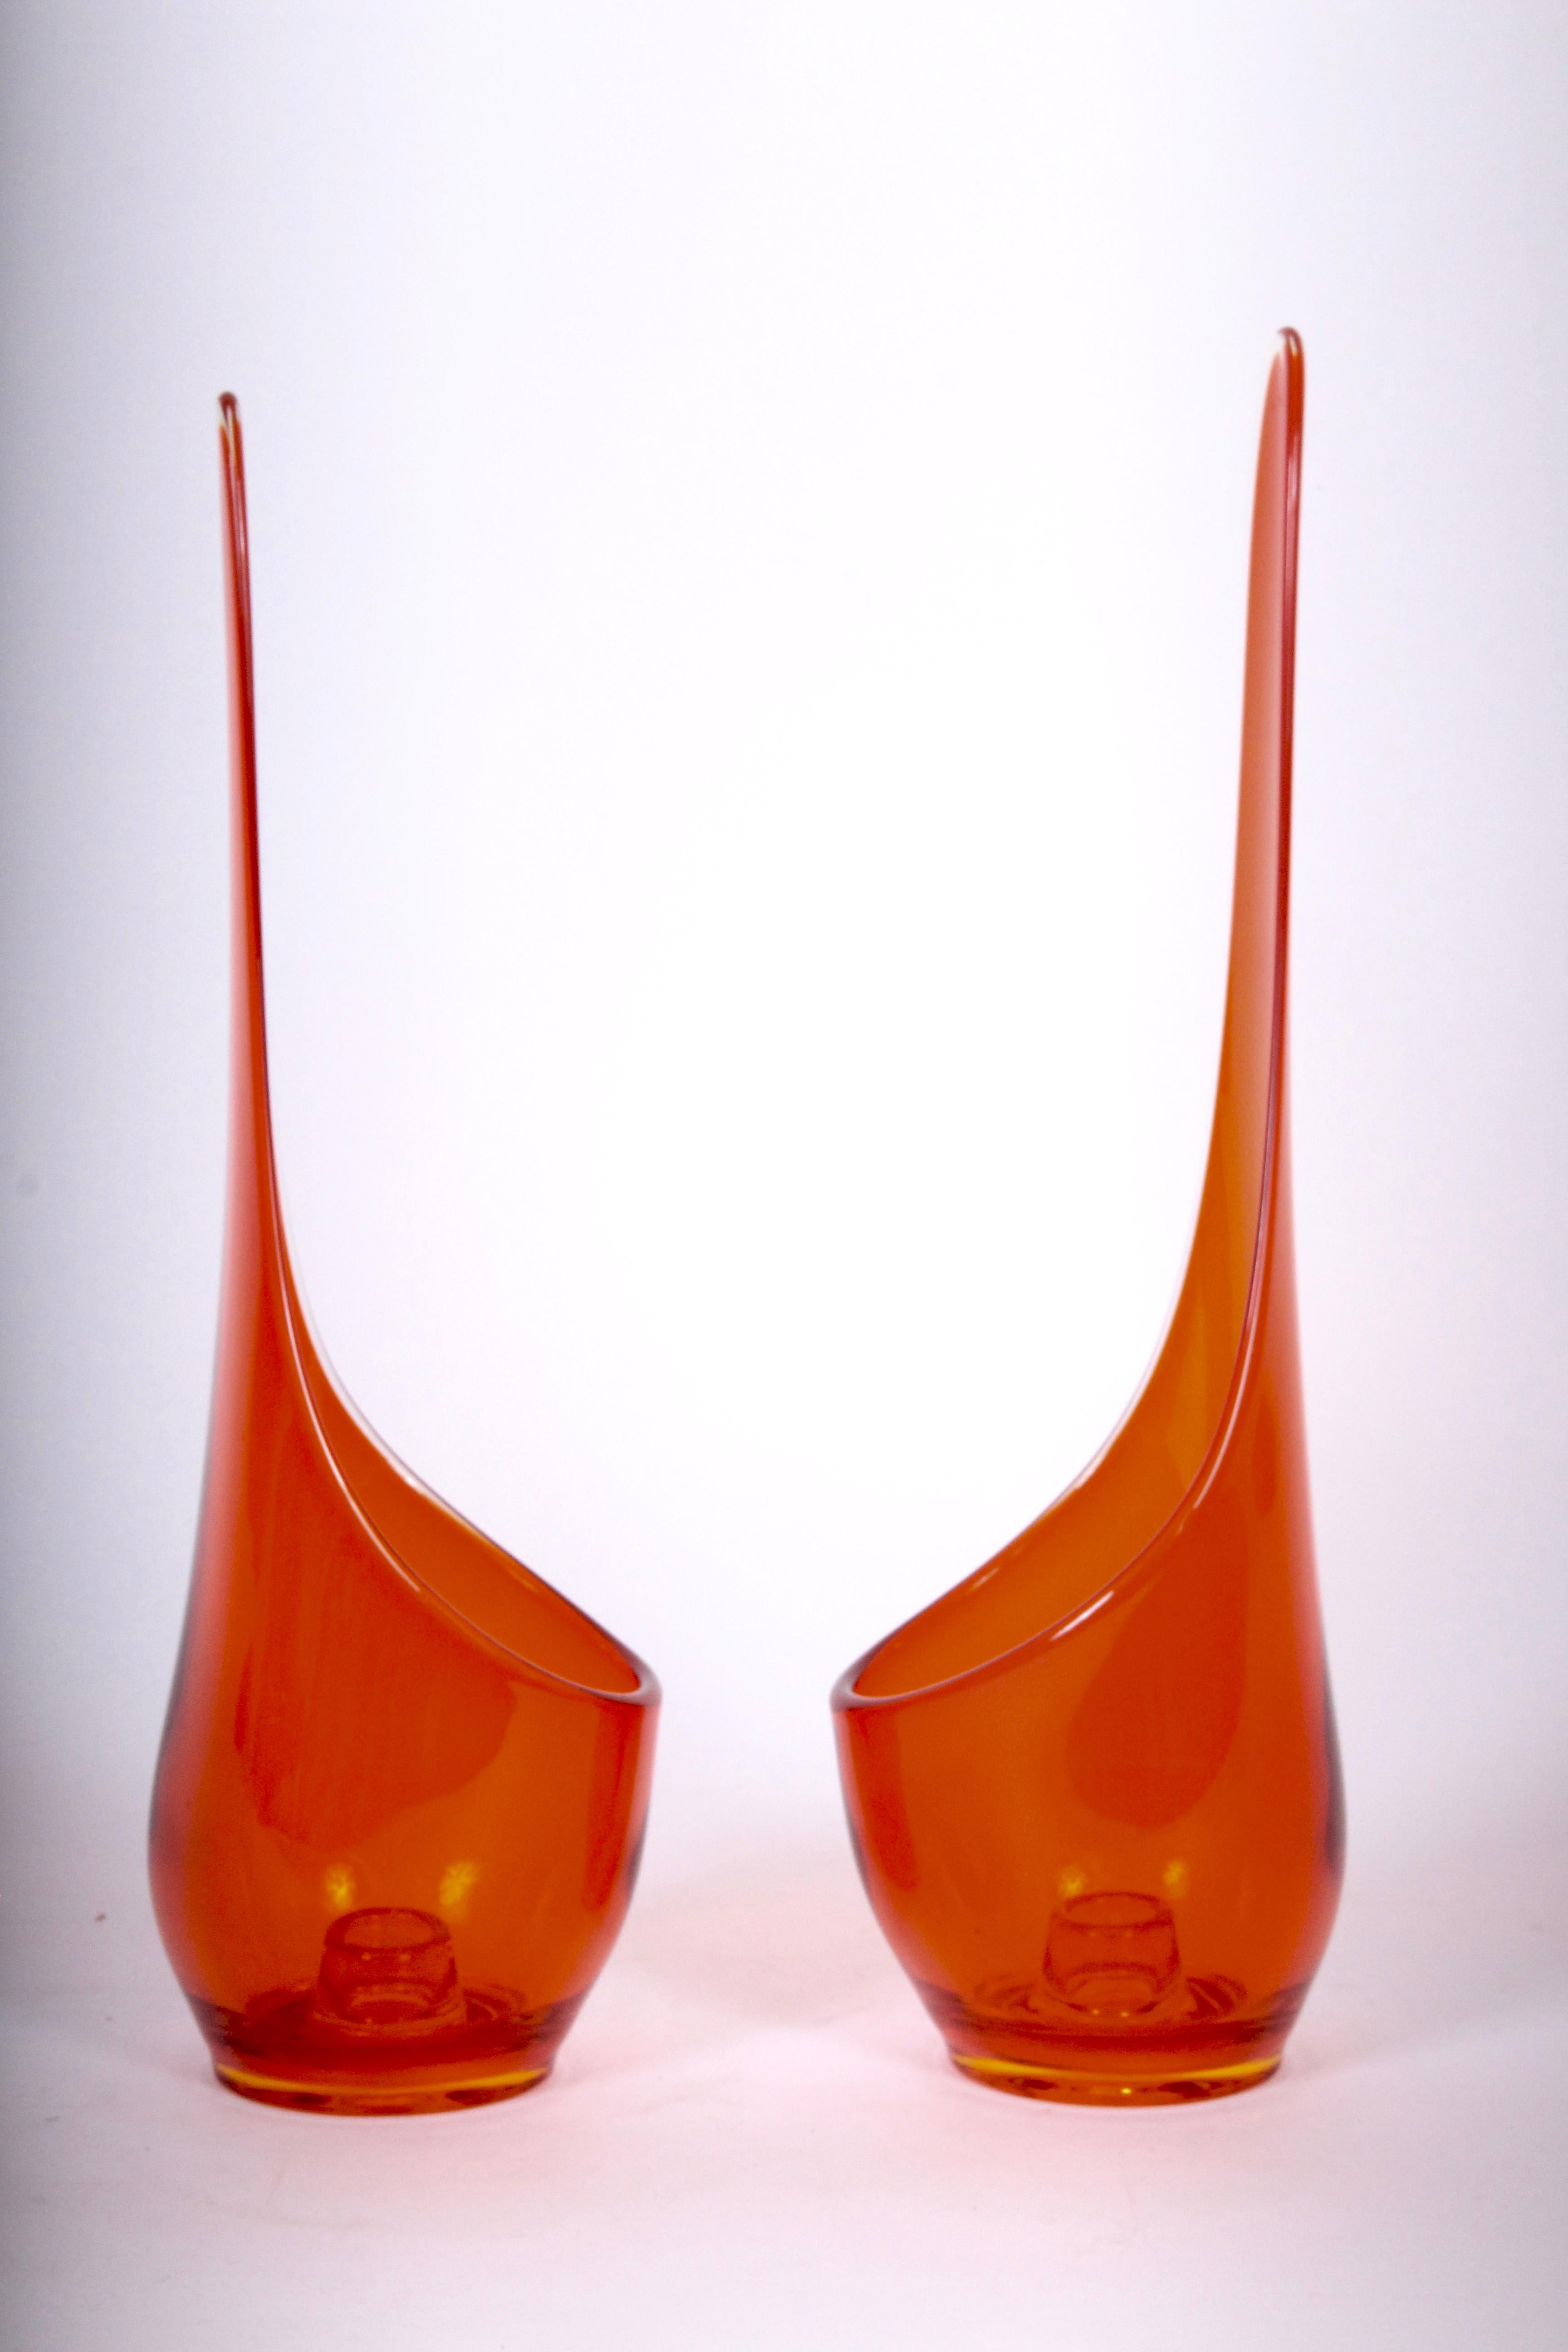 Grande paire de chandeliers en verre d'art translucide de la Viking glass company, de style moderne du milieu du siècle dernier, de couleur orange foncé. Sculptural. Statuaire. Verre non marqué. Le Label n'est plus visible. Sans rayures, années